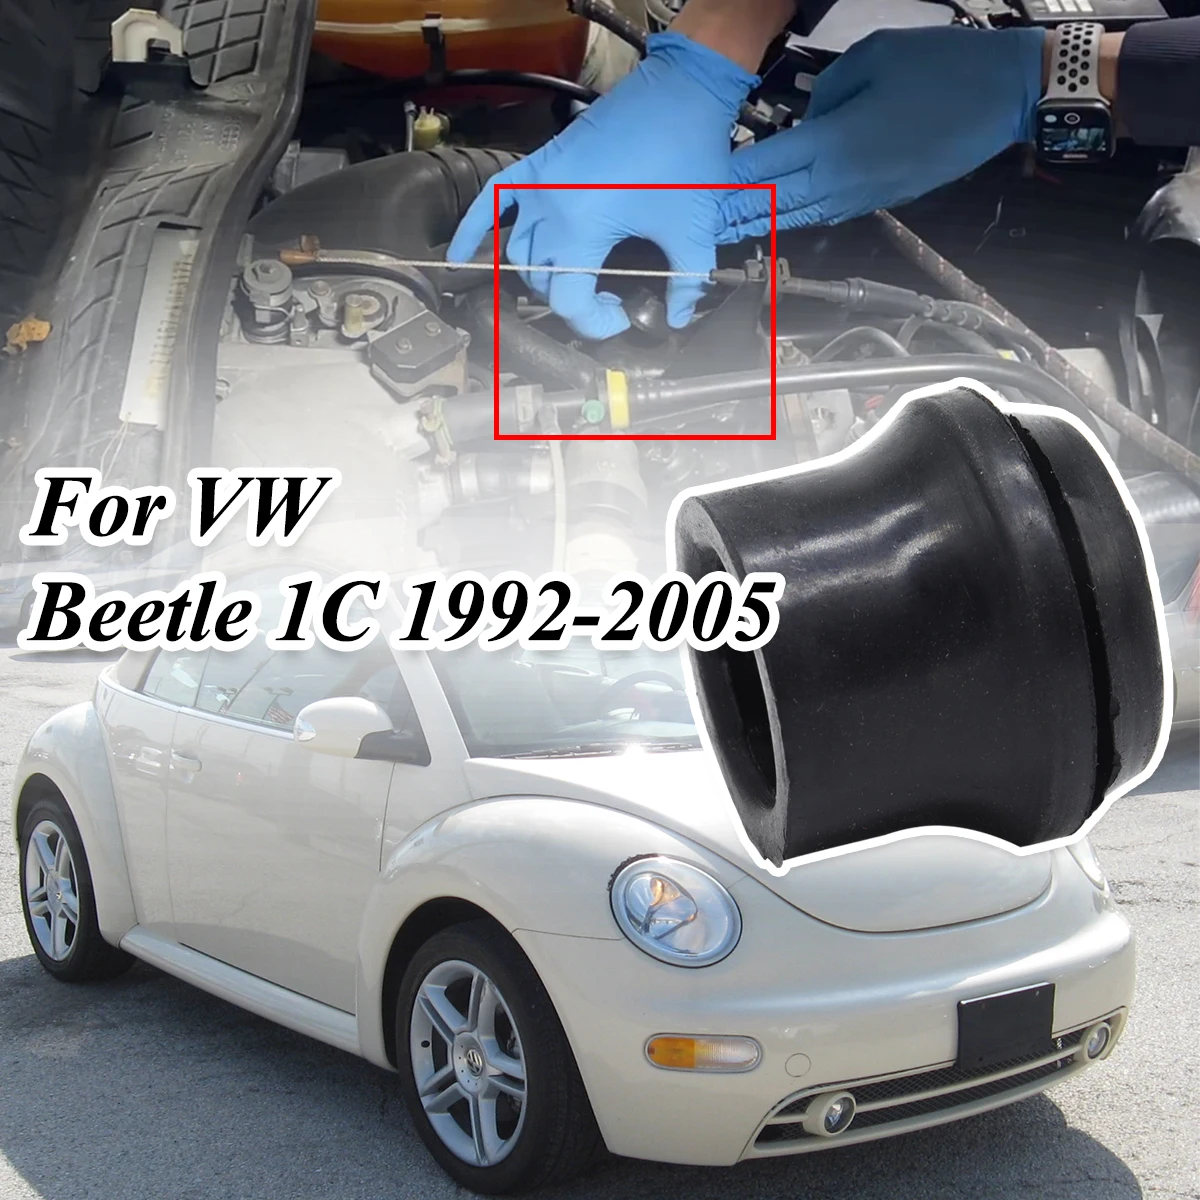 

For VW Beetle 1C 1992-2005 Rocker Valve Cover Grommet Oil Filler Seal Breather Cylinder Head Crankcase Ventilation Rubber Gasket